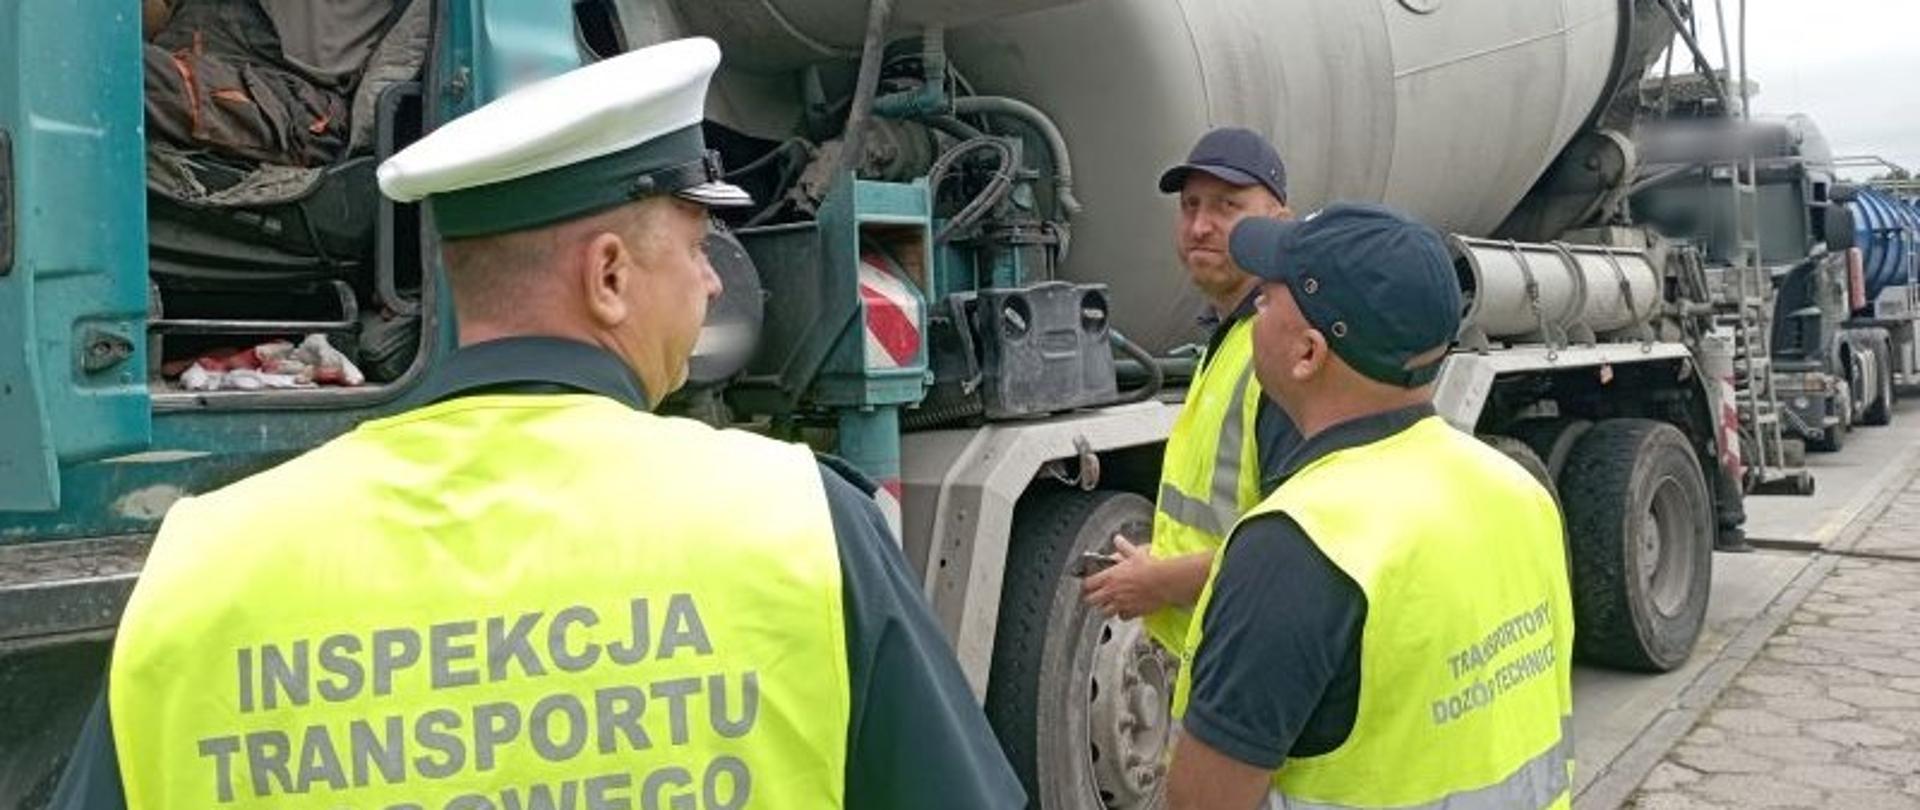 Od lewej strony: funkcjonariusz kujawsko-pomorskiej ITD i inspektorzy TDT stoją obok zatrzymanej do kontroli ciężarówki z pompą do podawania betonu. Inspektorzy rozmawiają z kierowcą pojazdu i pobierają od niego wymagane dokumenty do kontroli.